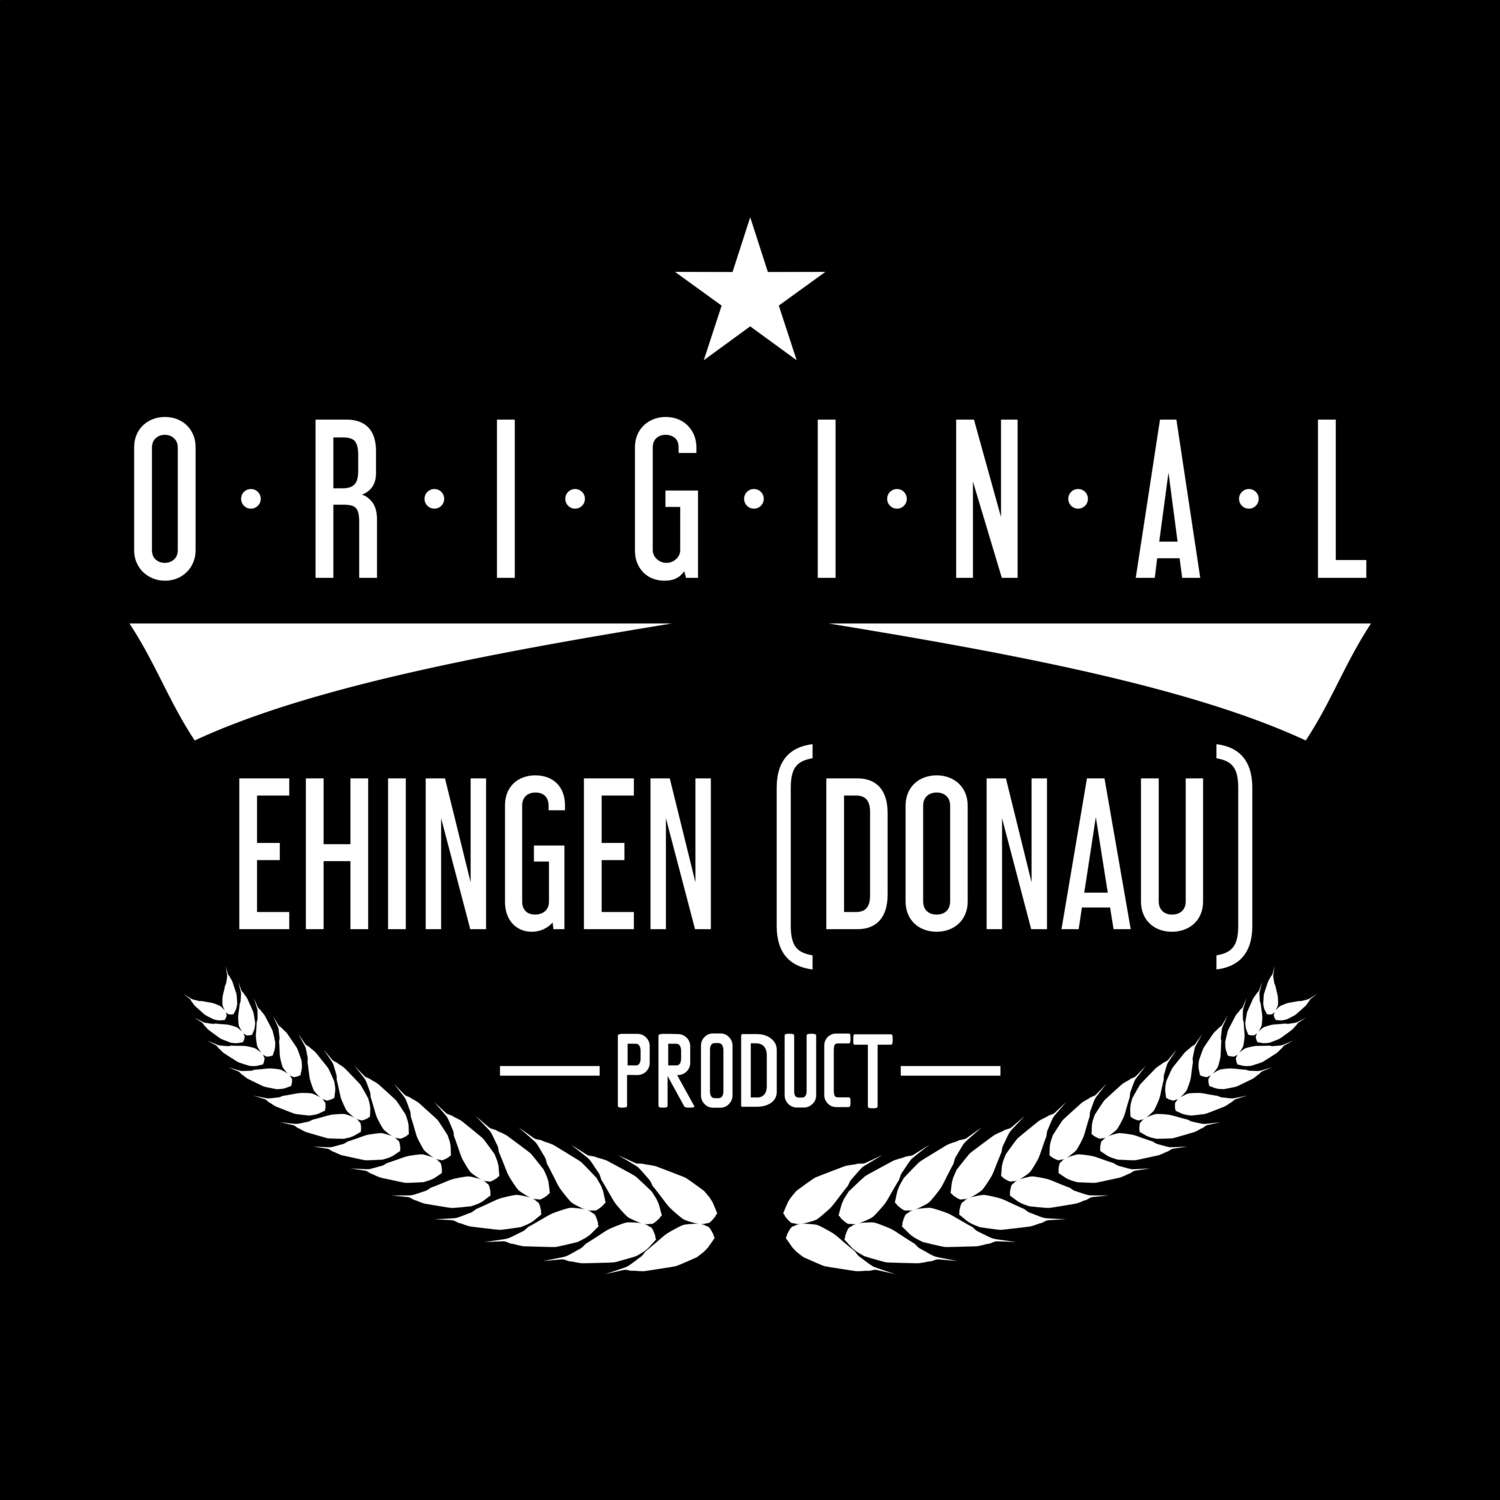 Ehingen (Donau) T-Shirt »Original Product«